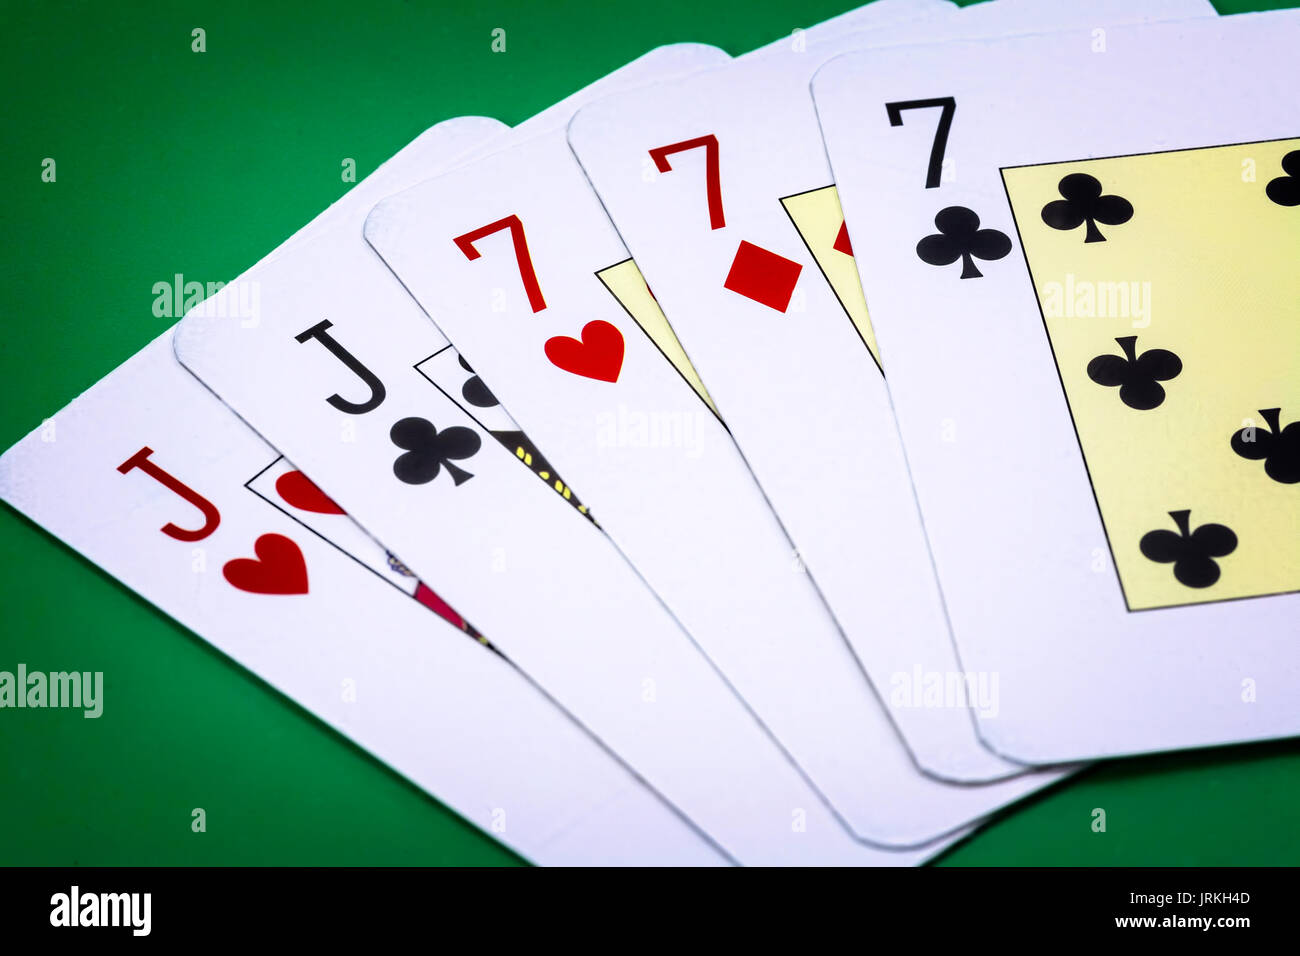 Appel de main de poker full house, composé par deux j et trois lettres du  nombre sept sur fond vert Photo Stock - Alamy